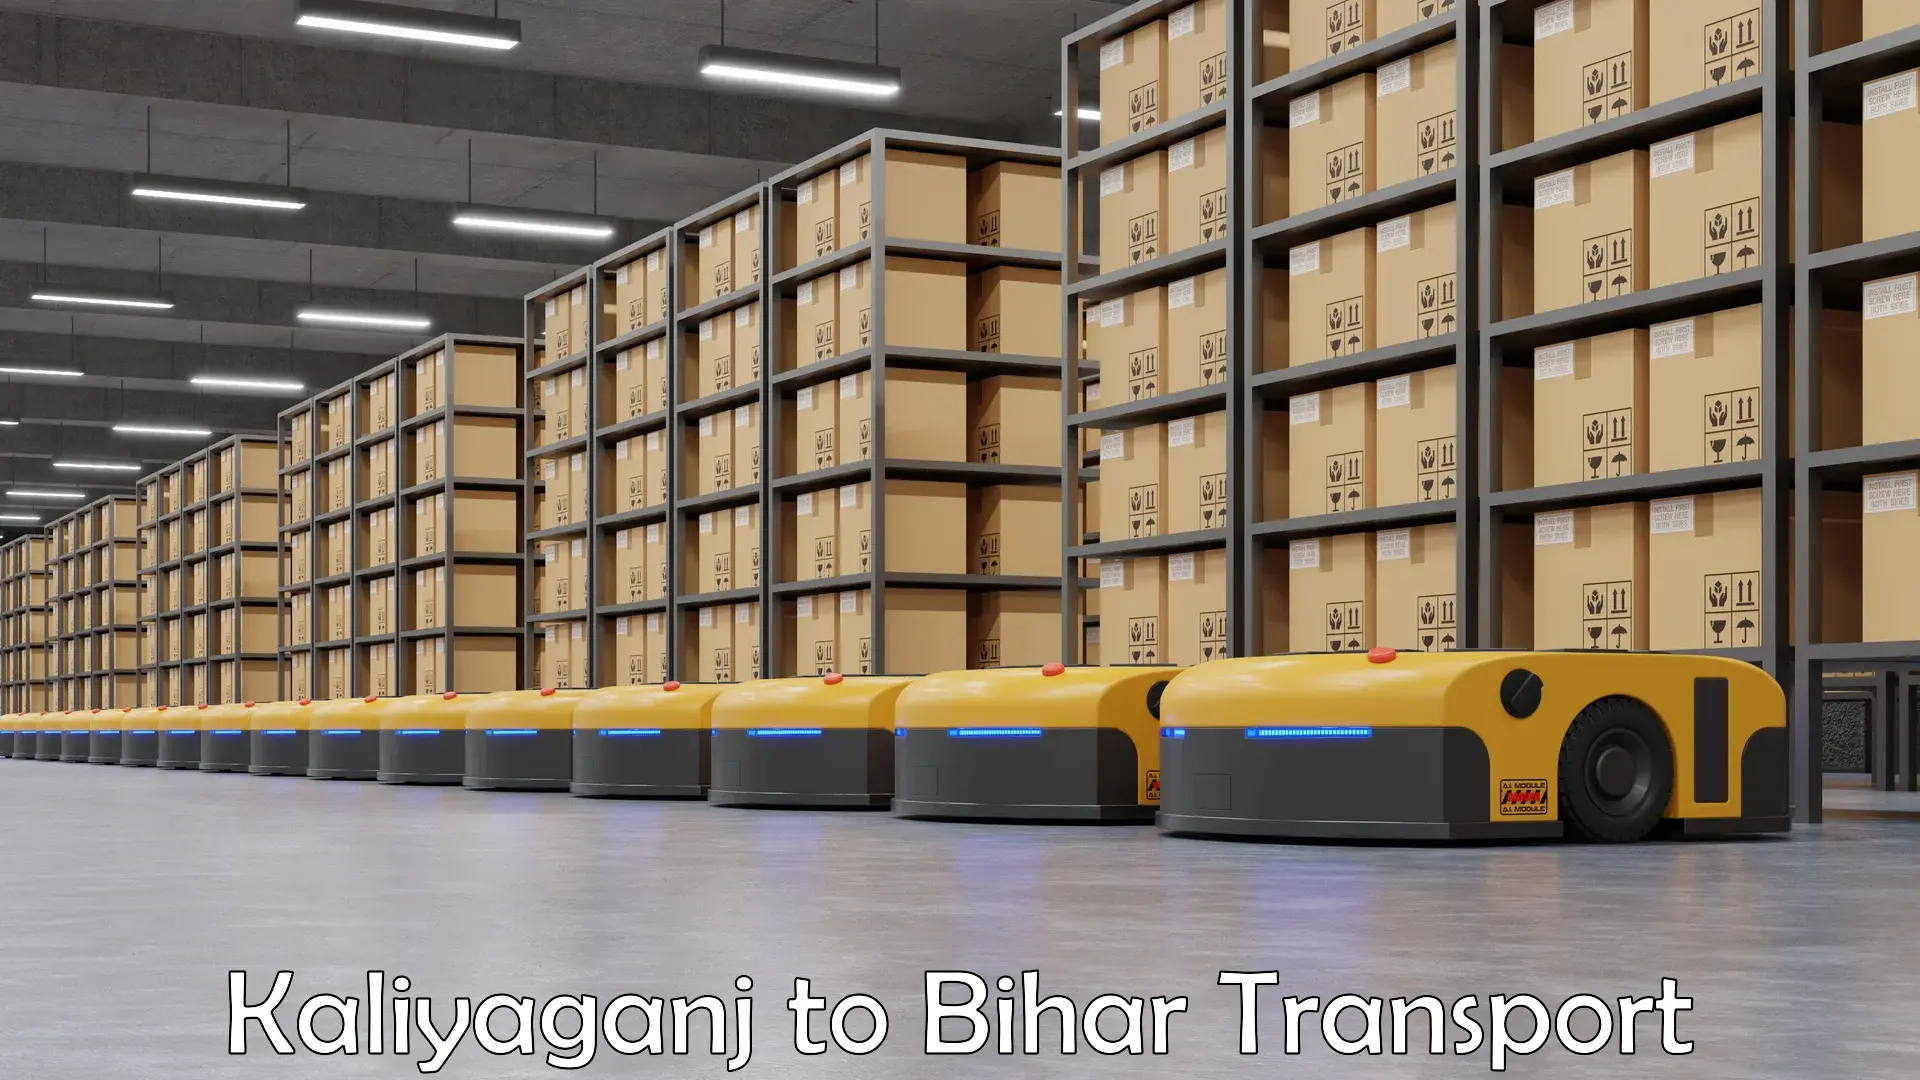 Logistics transportation services Kaliyaganj to Dhaka